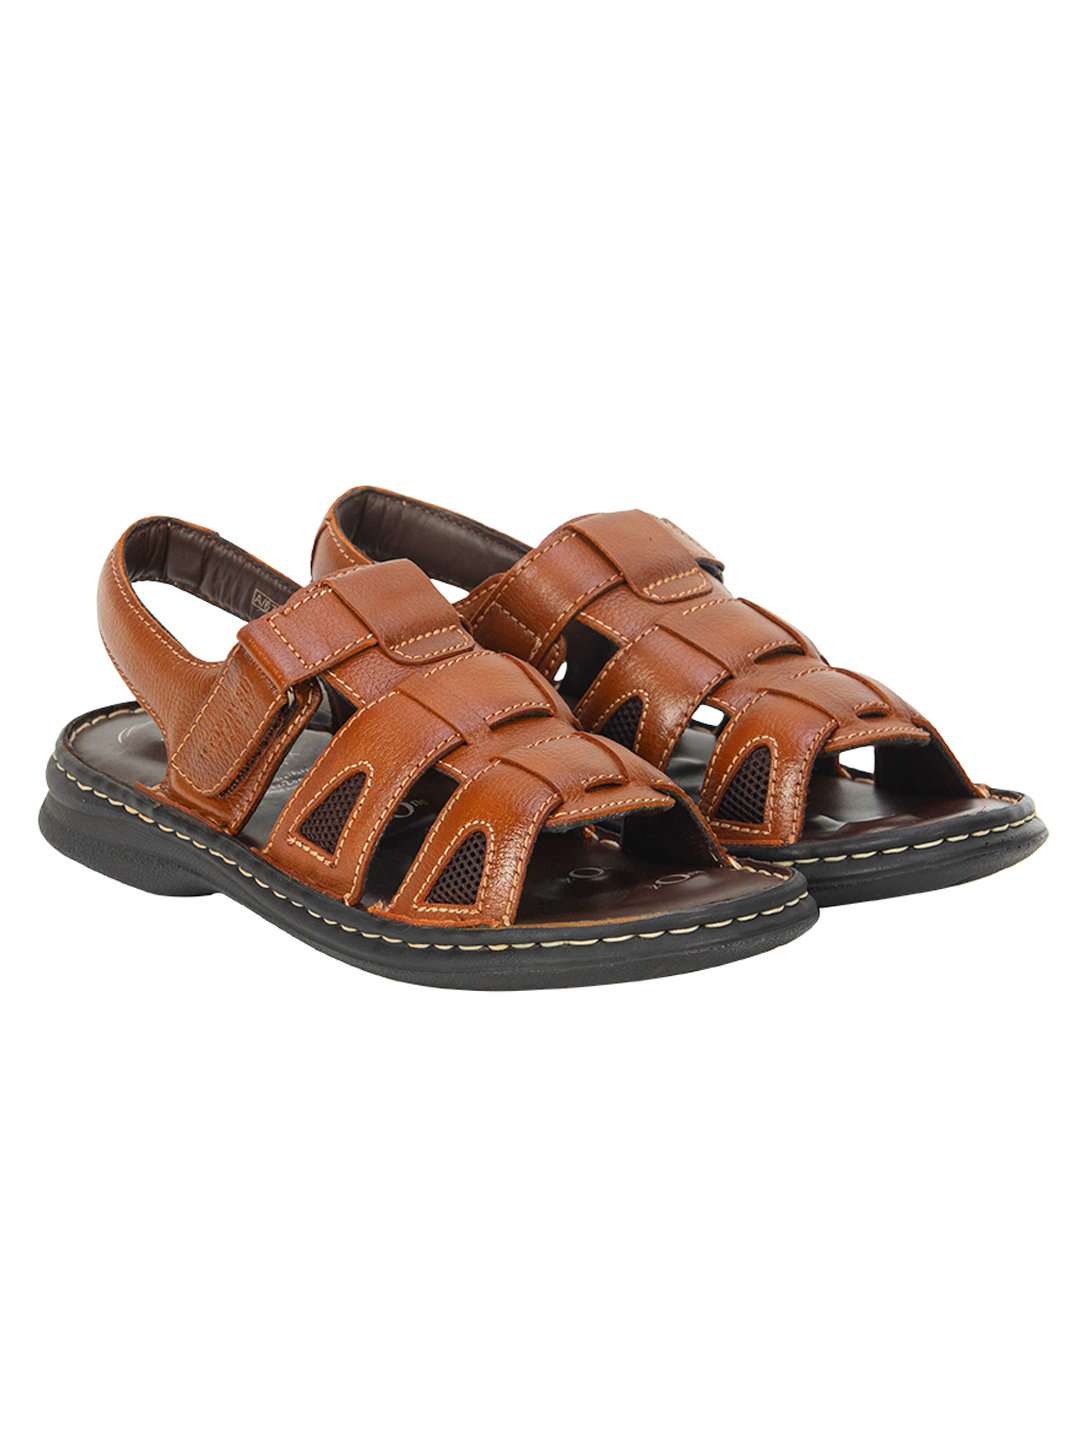 Buy Von Wellx Germany Comfort Rhys Tan Sandals Online in Qatar